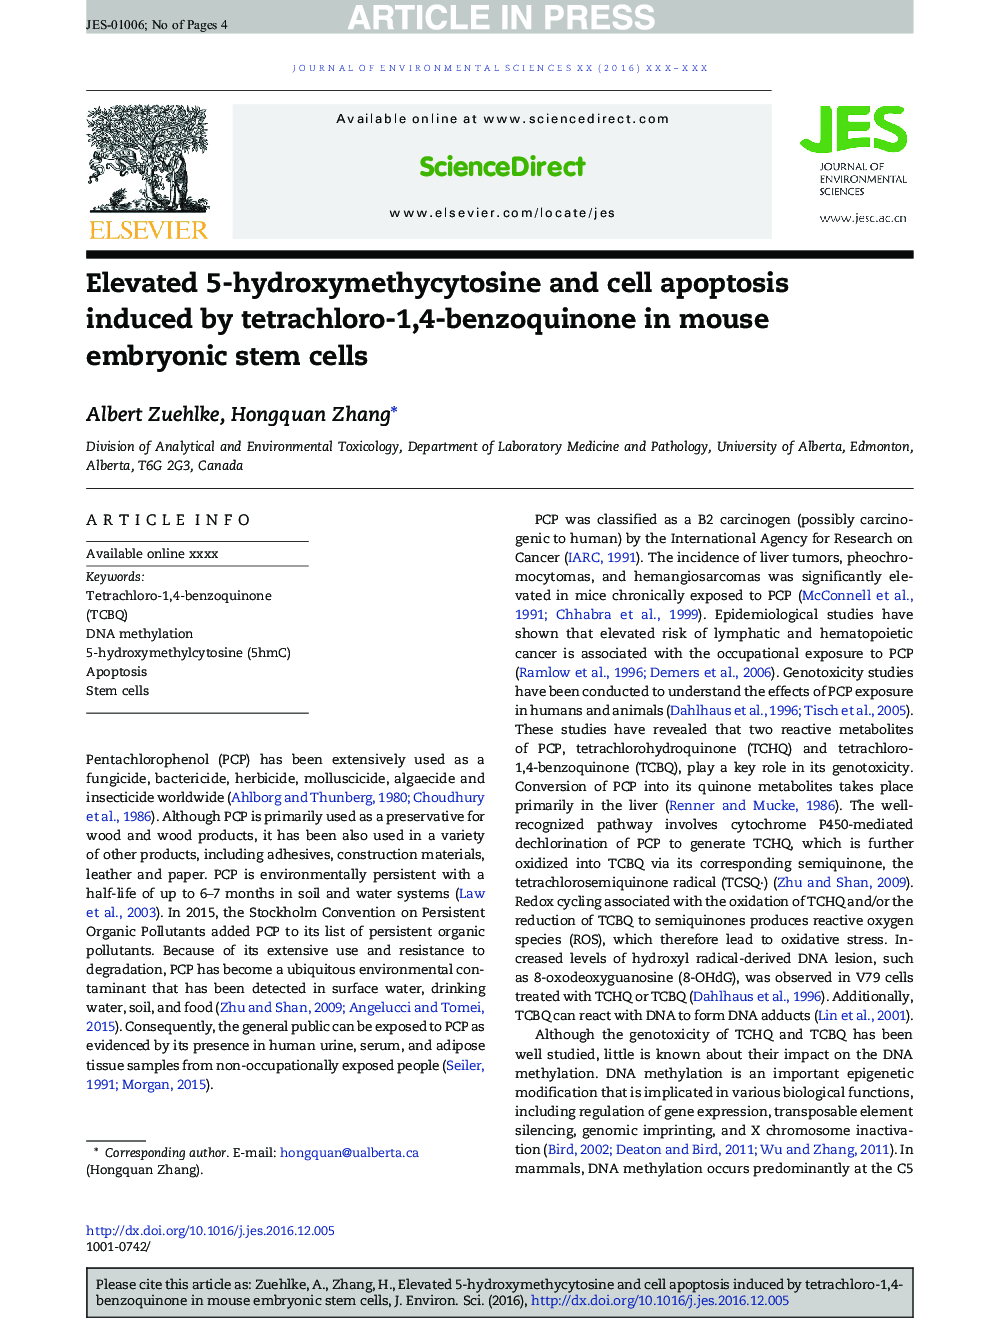 افزایش 5 هیدروکسی متی سیتوزین و آپوپتوز سلول ناشی از تترا کلرو-1،4-بنزووینون در سلول های بنیادی جنینی موش 